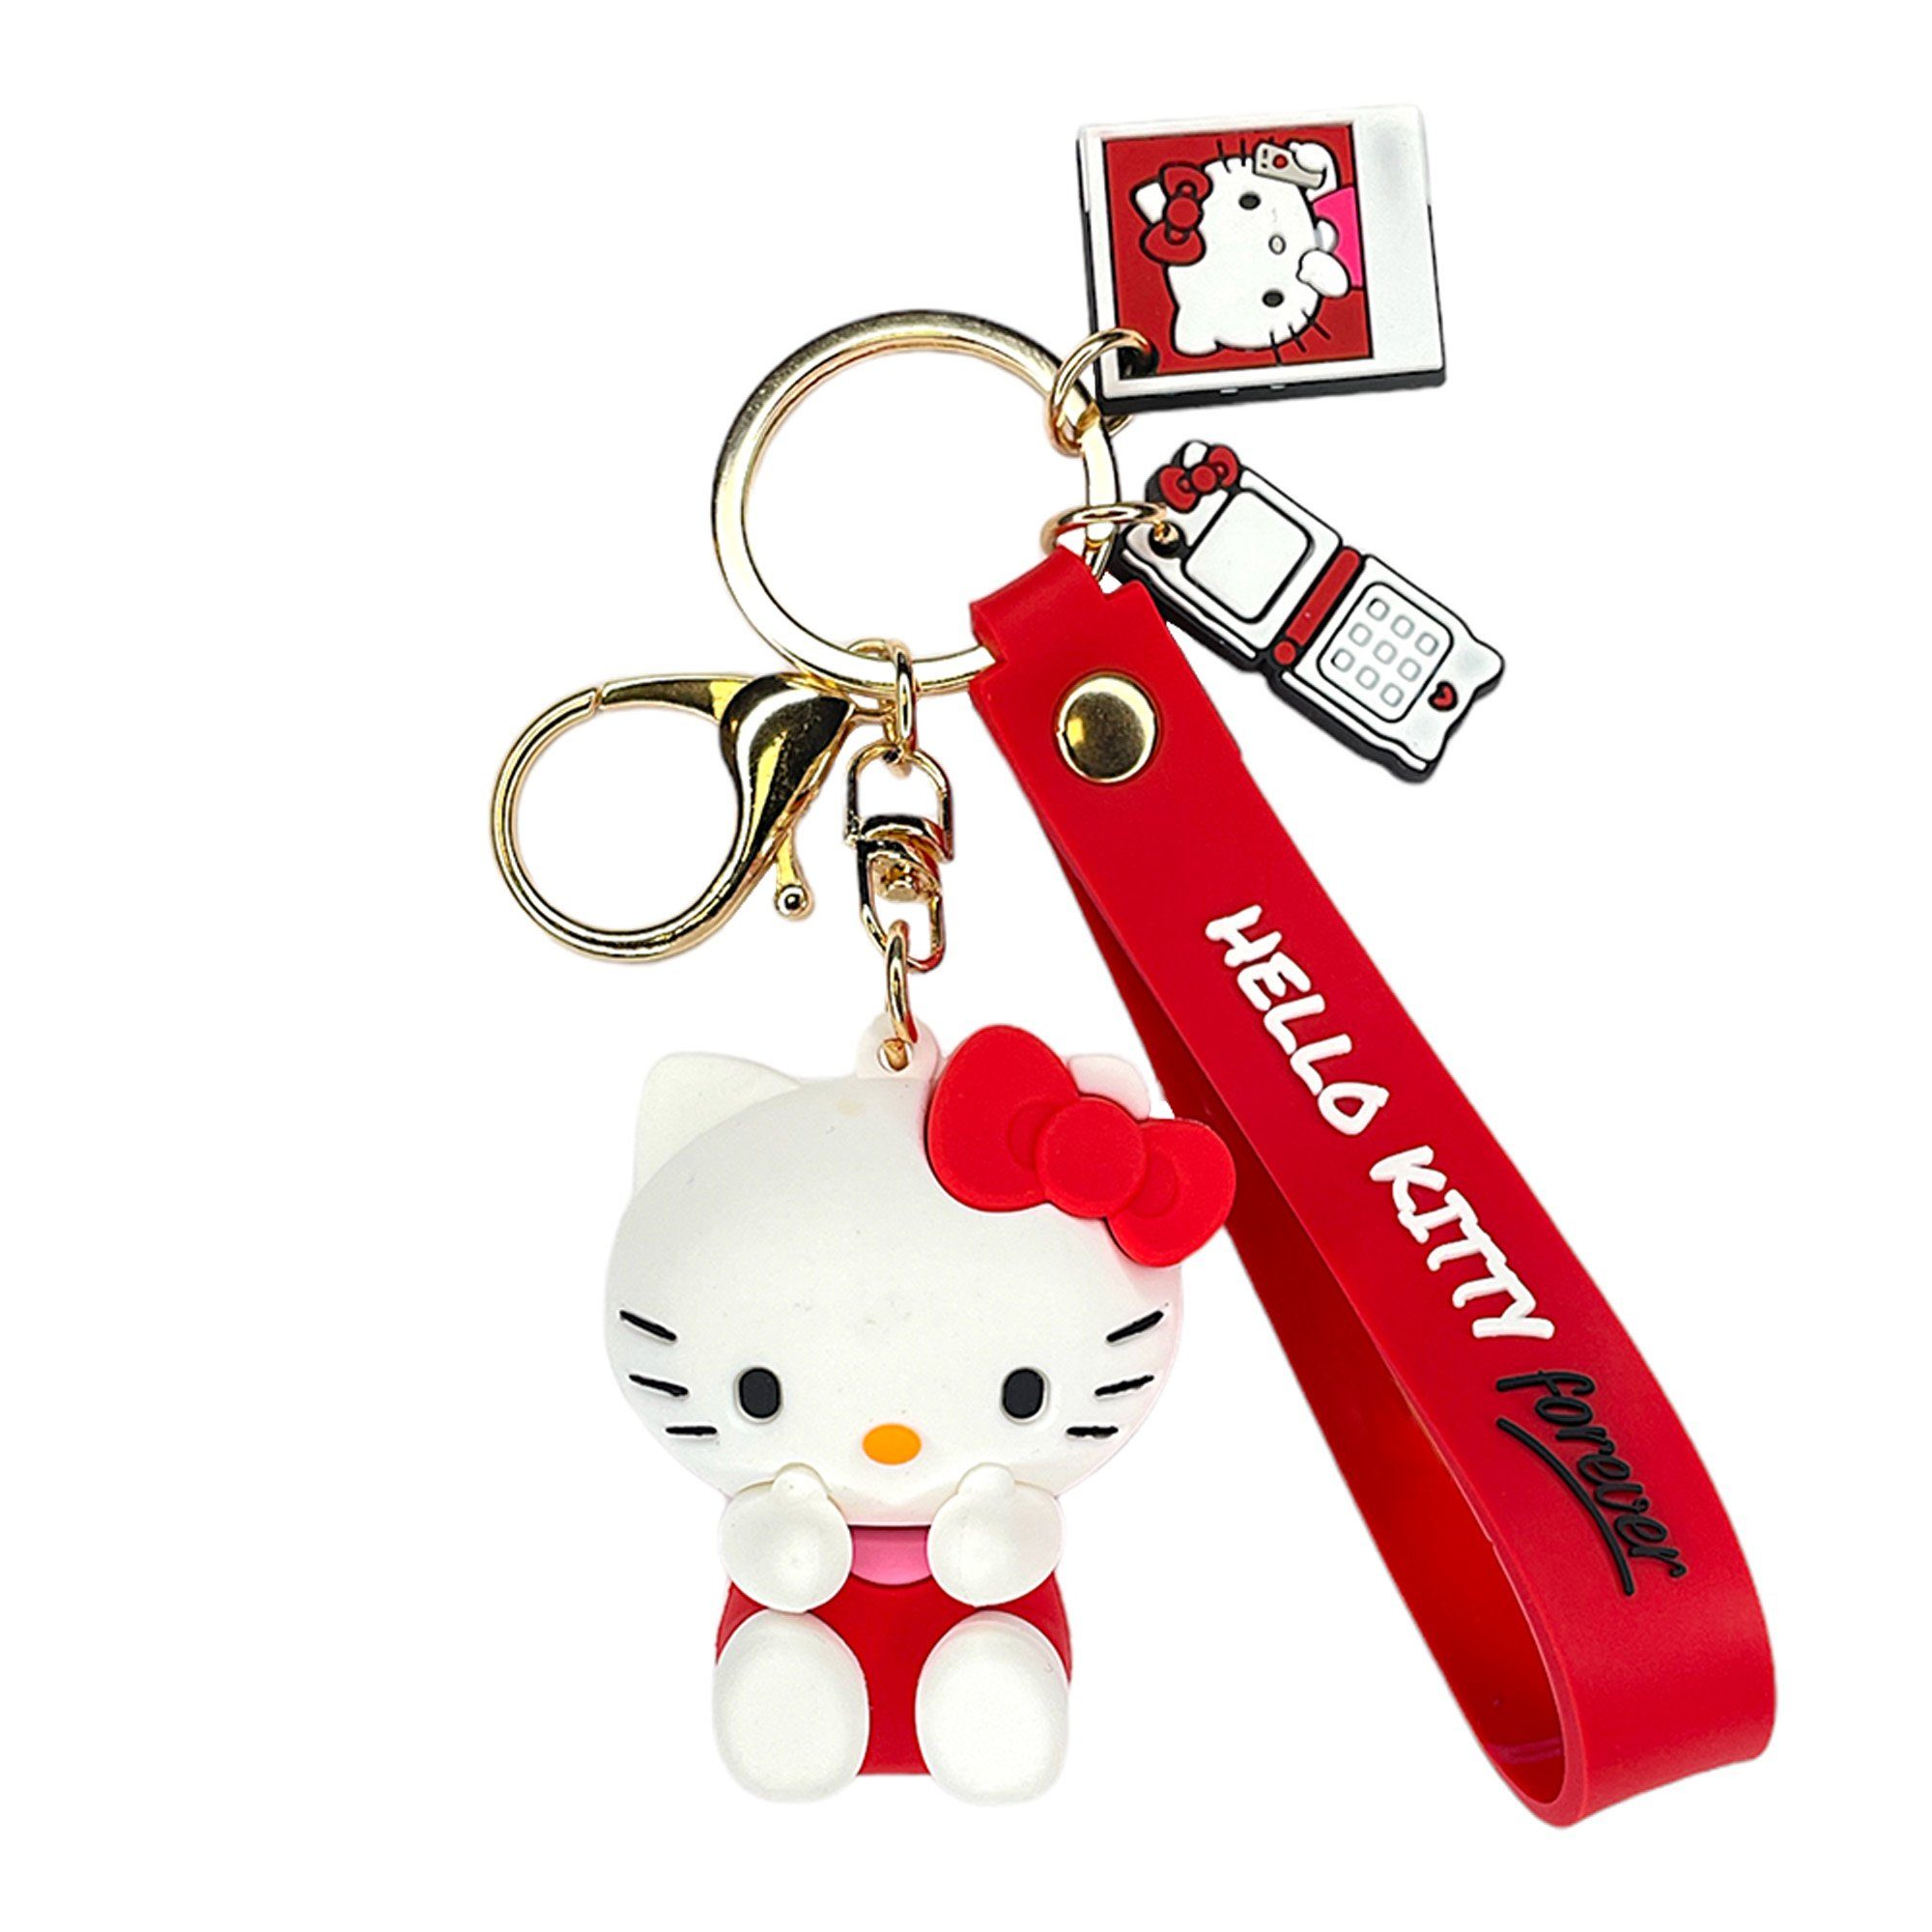 Take Care Schlüsselanhänger Hello Kitty Sanrio rot - Hello Kitty